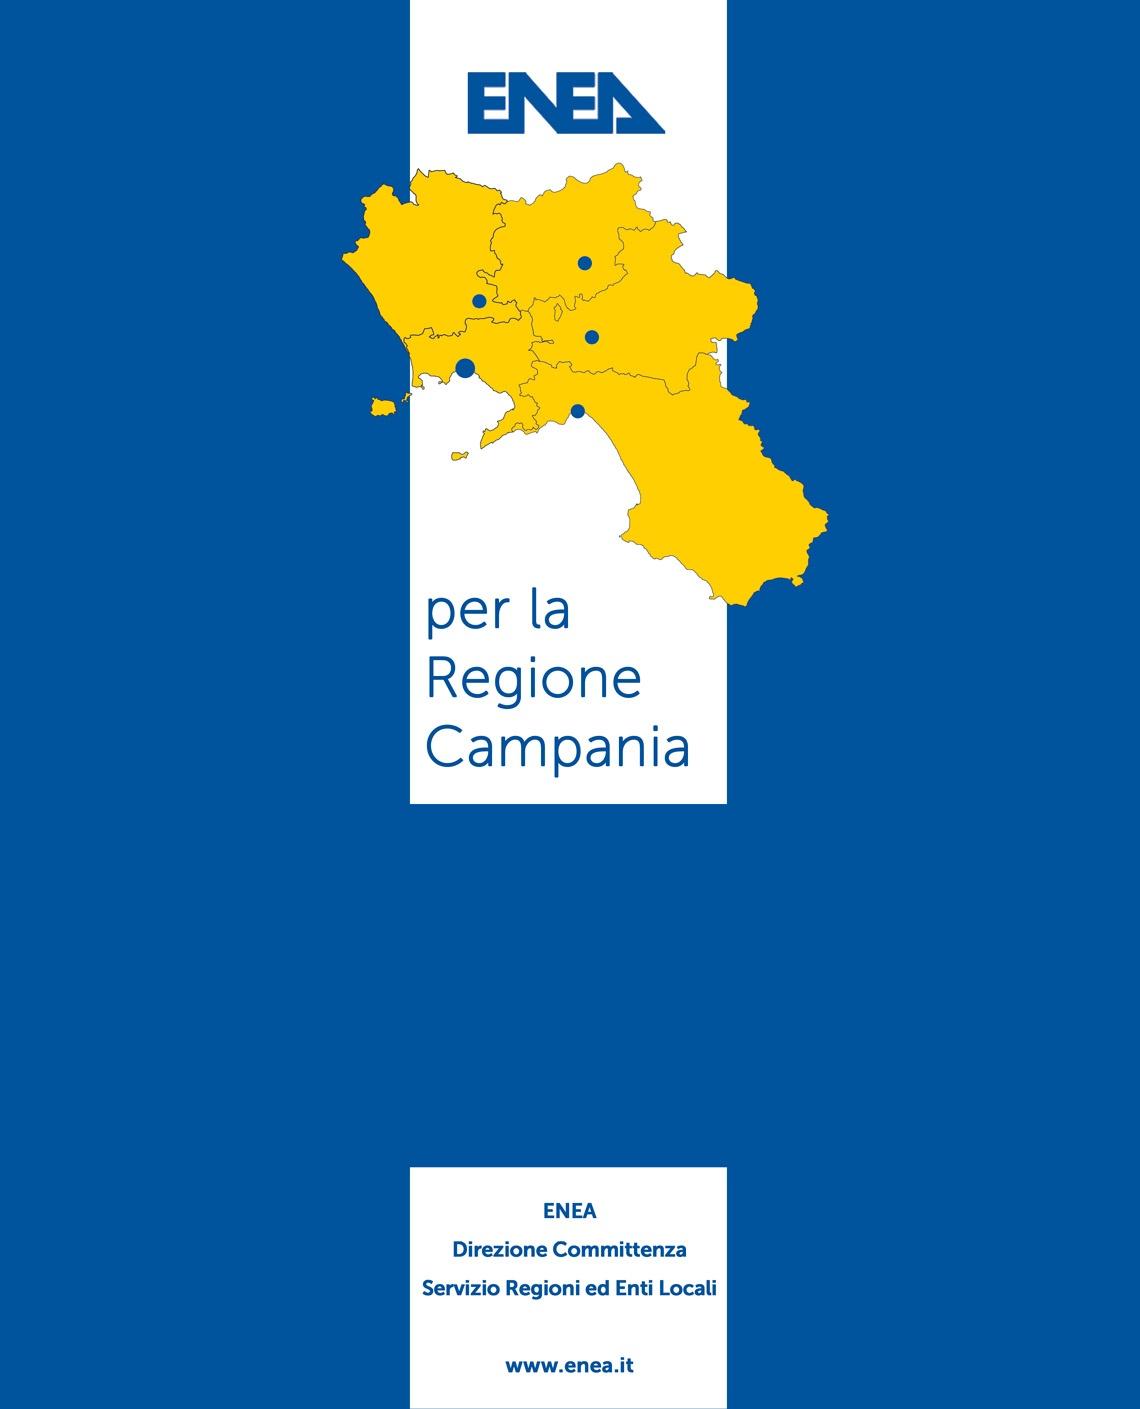 ENEA per la Regione Campania